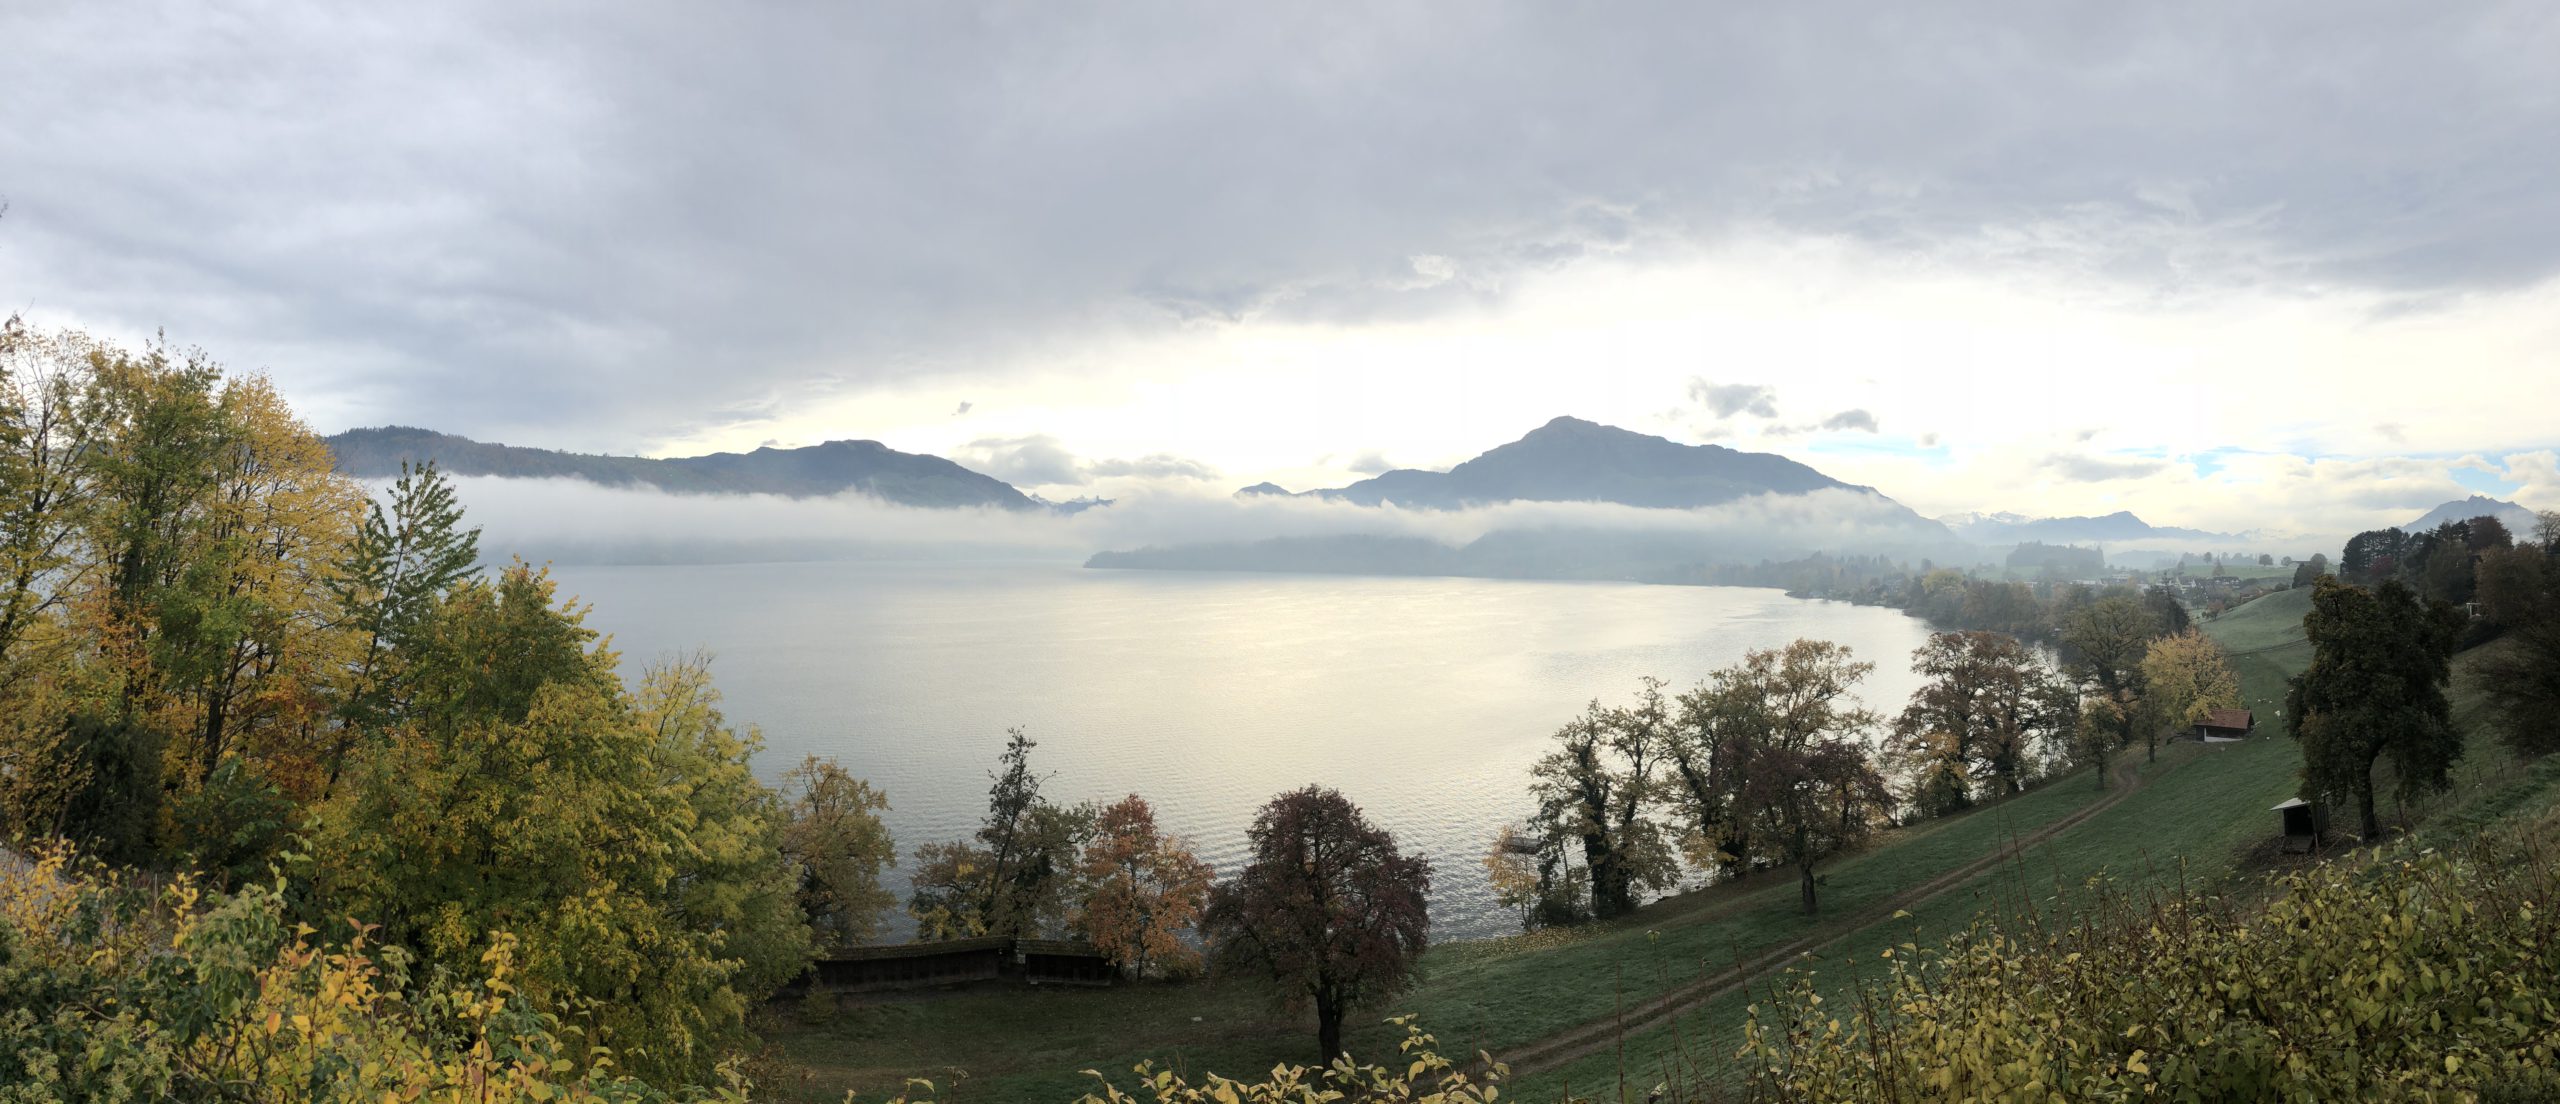 Lake of Zug